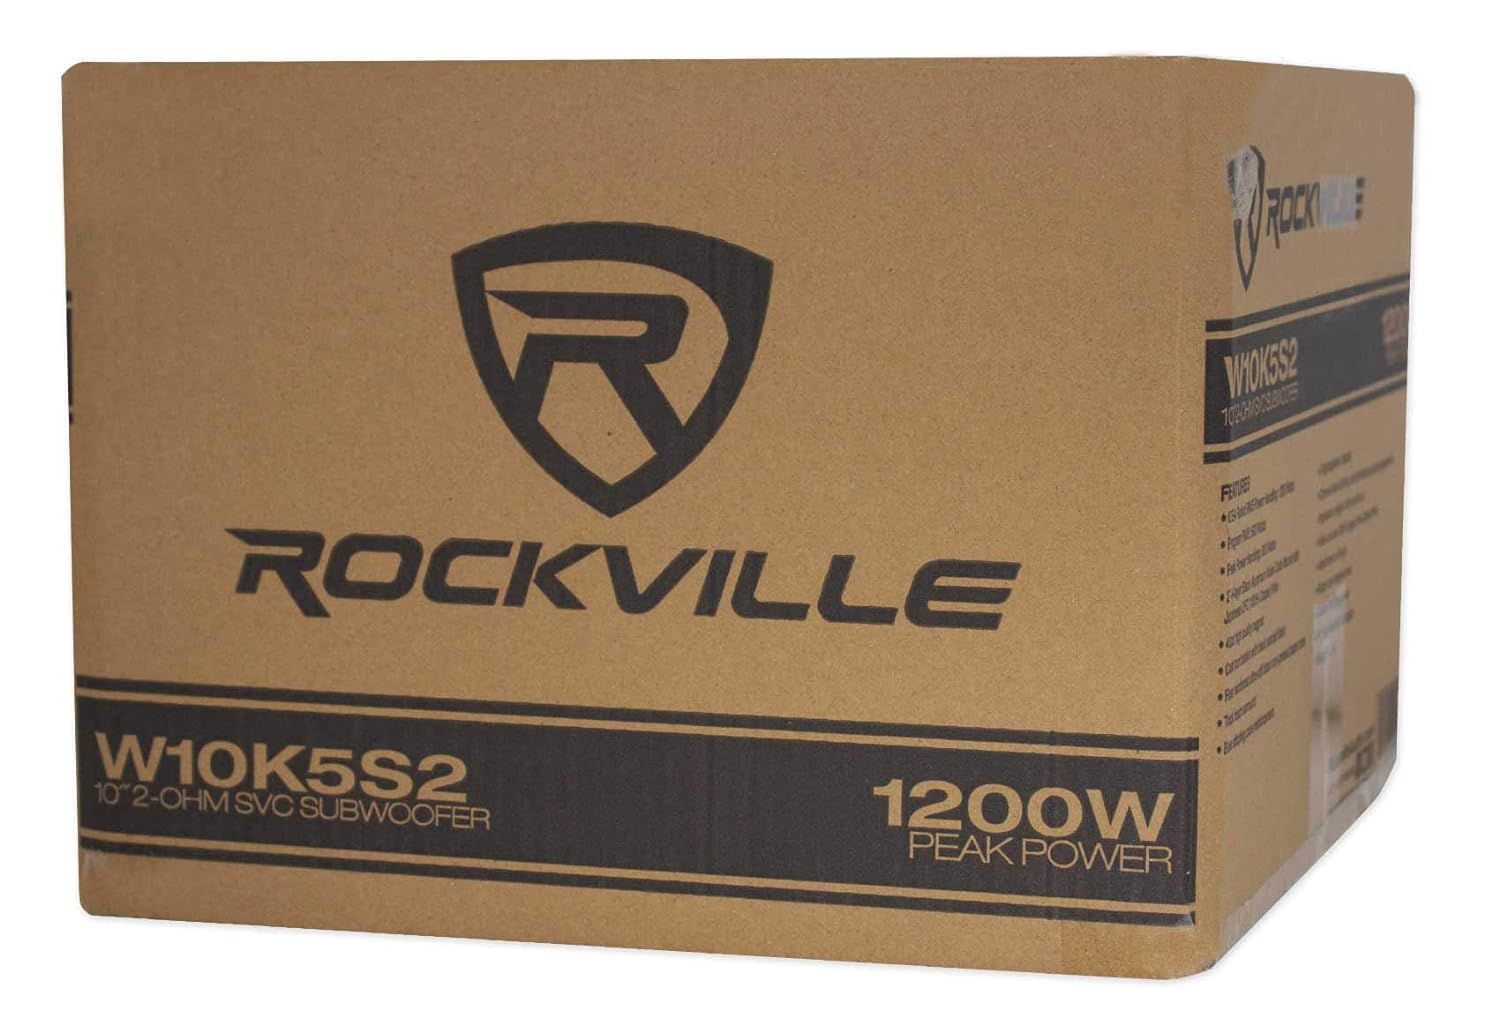 Rockville K5 W10K5S2 1200 Watt Subwoofer